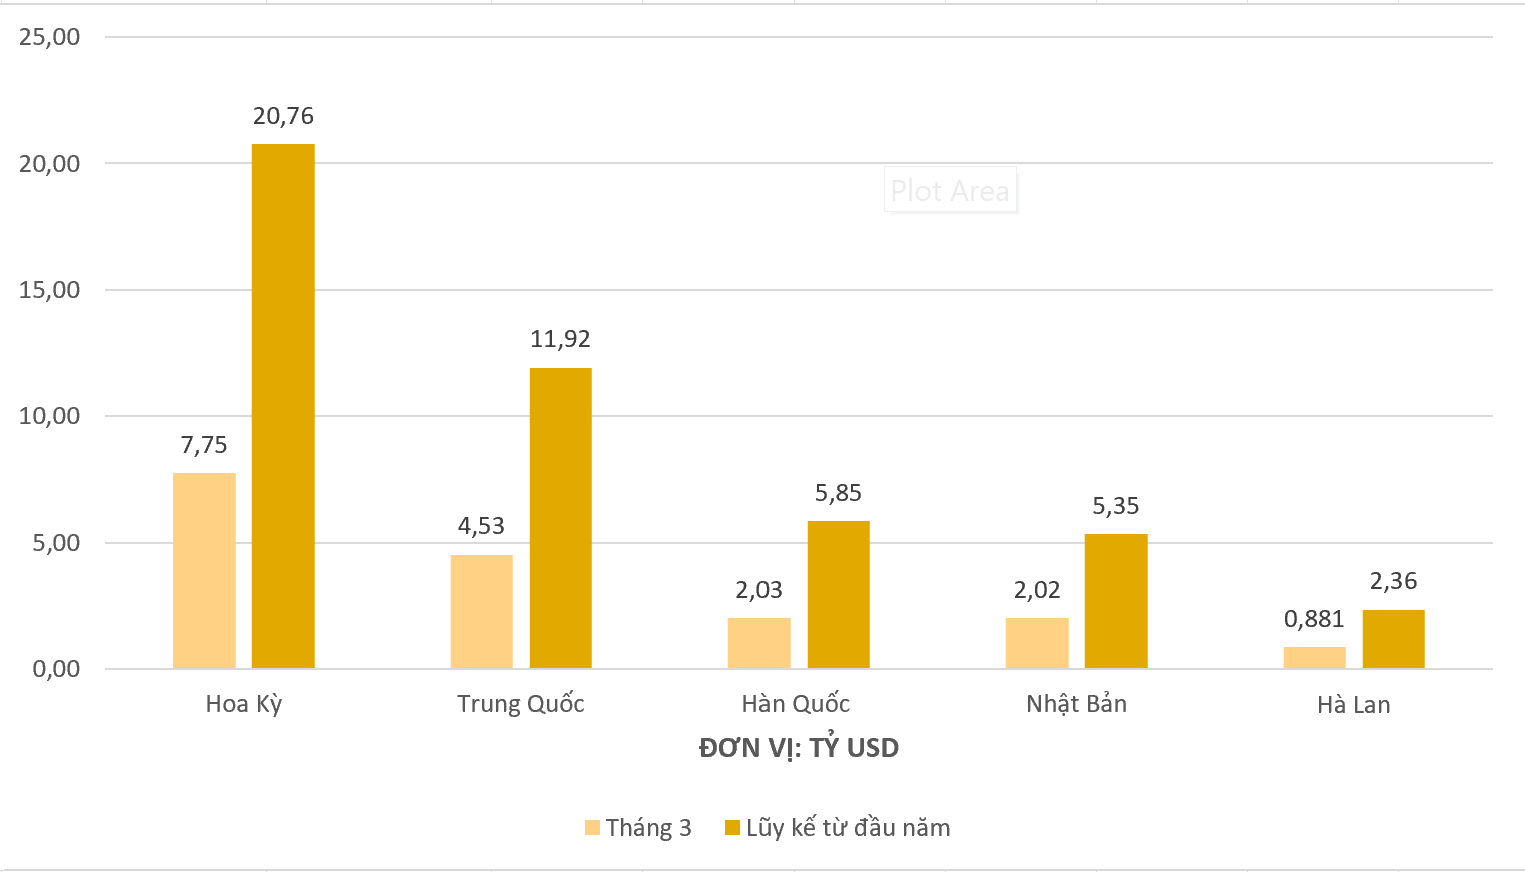 Lộ diện thị trường xuất khẩu của Việt Nam có kim ngạch vượt mốc 20 tỷ USD trong 3 tháng đầu năm - Ảnh 1.